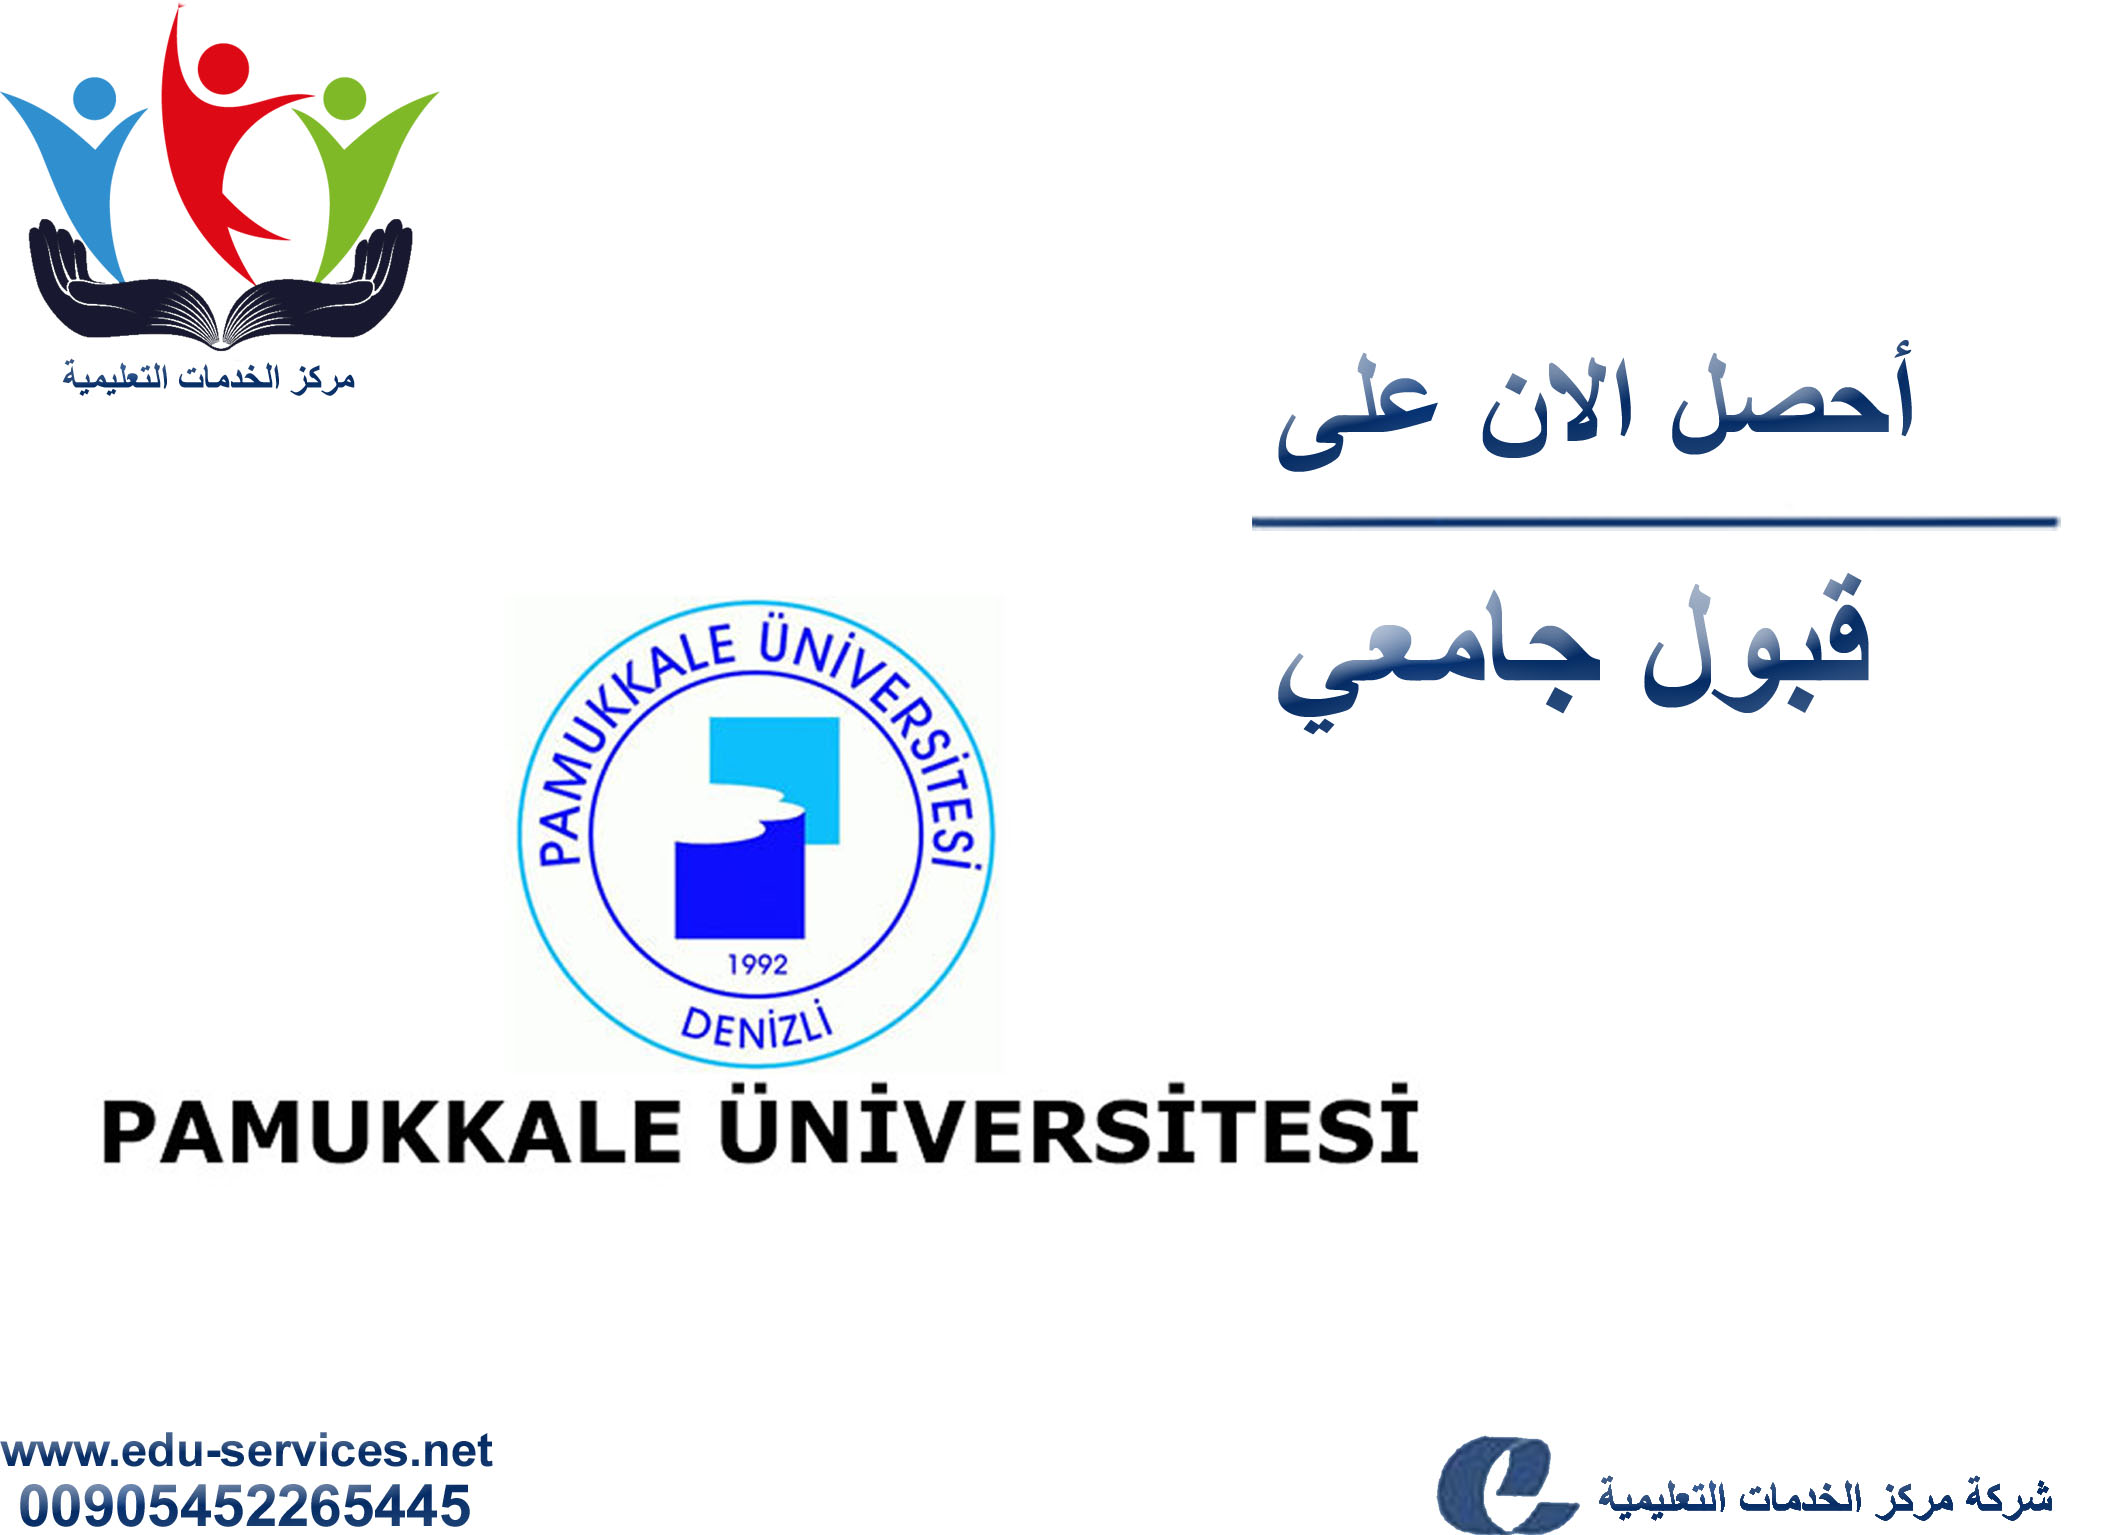 افتتاح التسجيل في جامعة باموكالي للعام 2018-2019